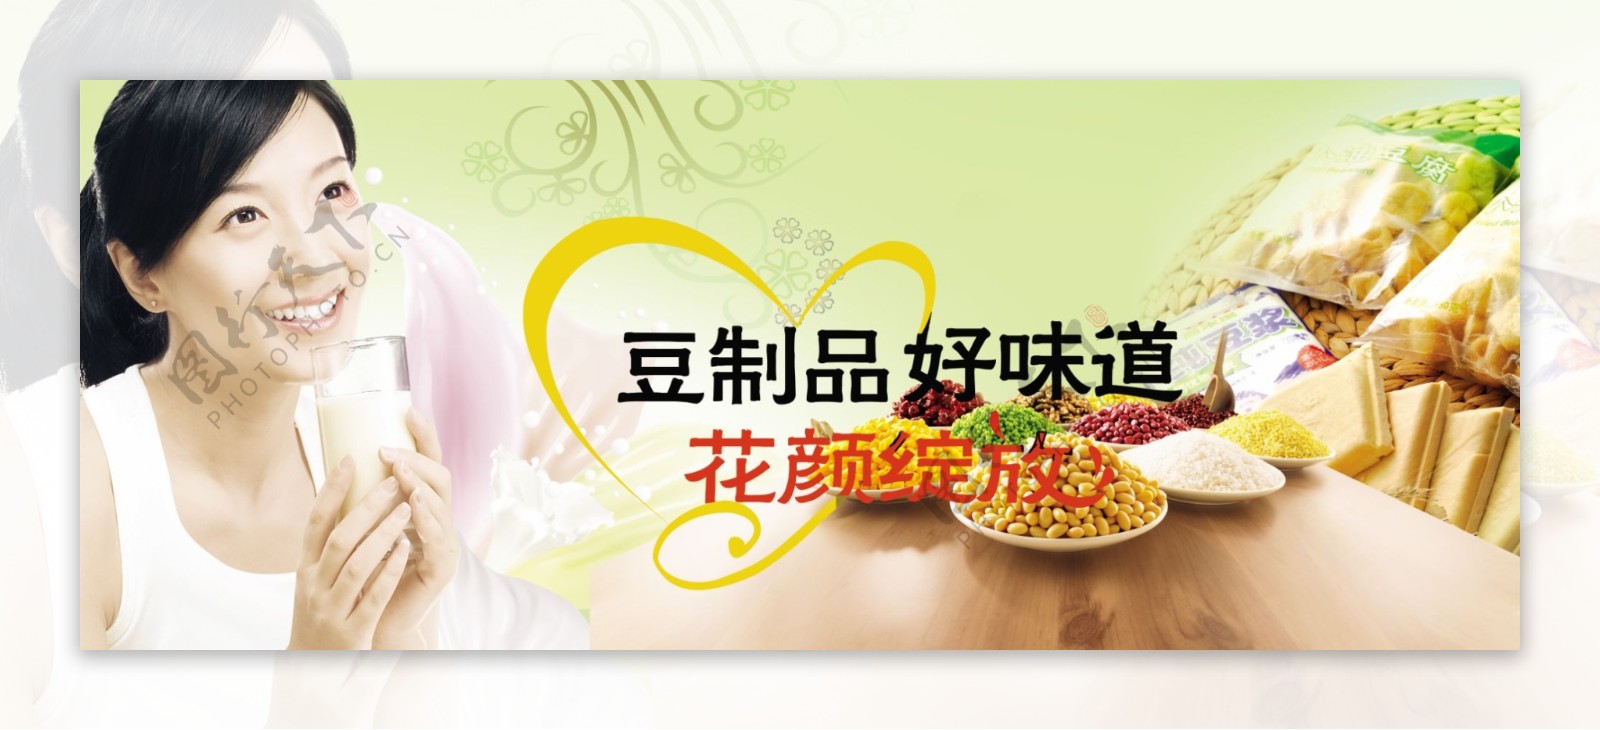 豆制品宣传广告图片